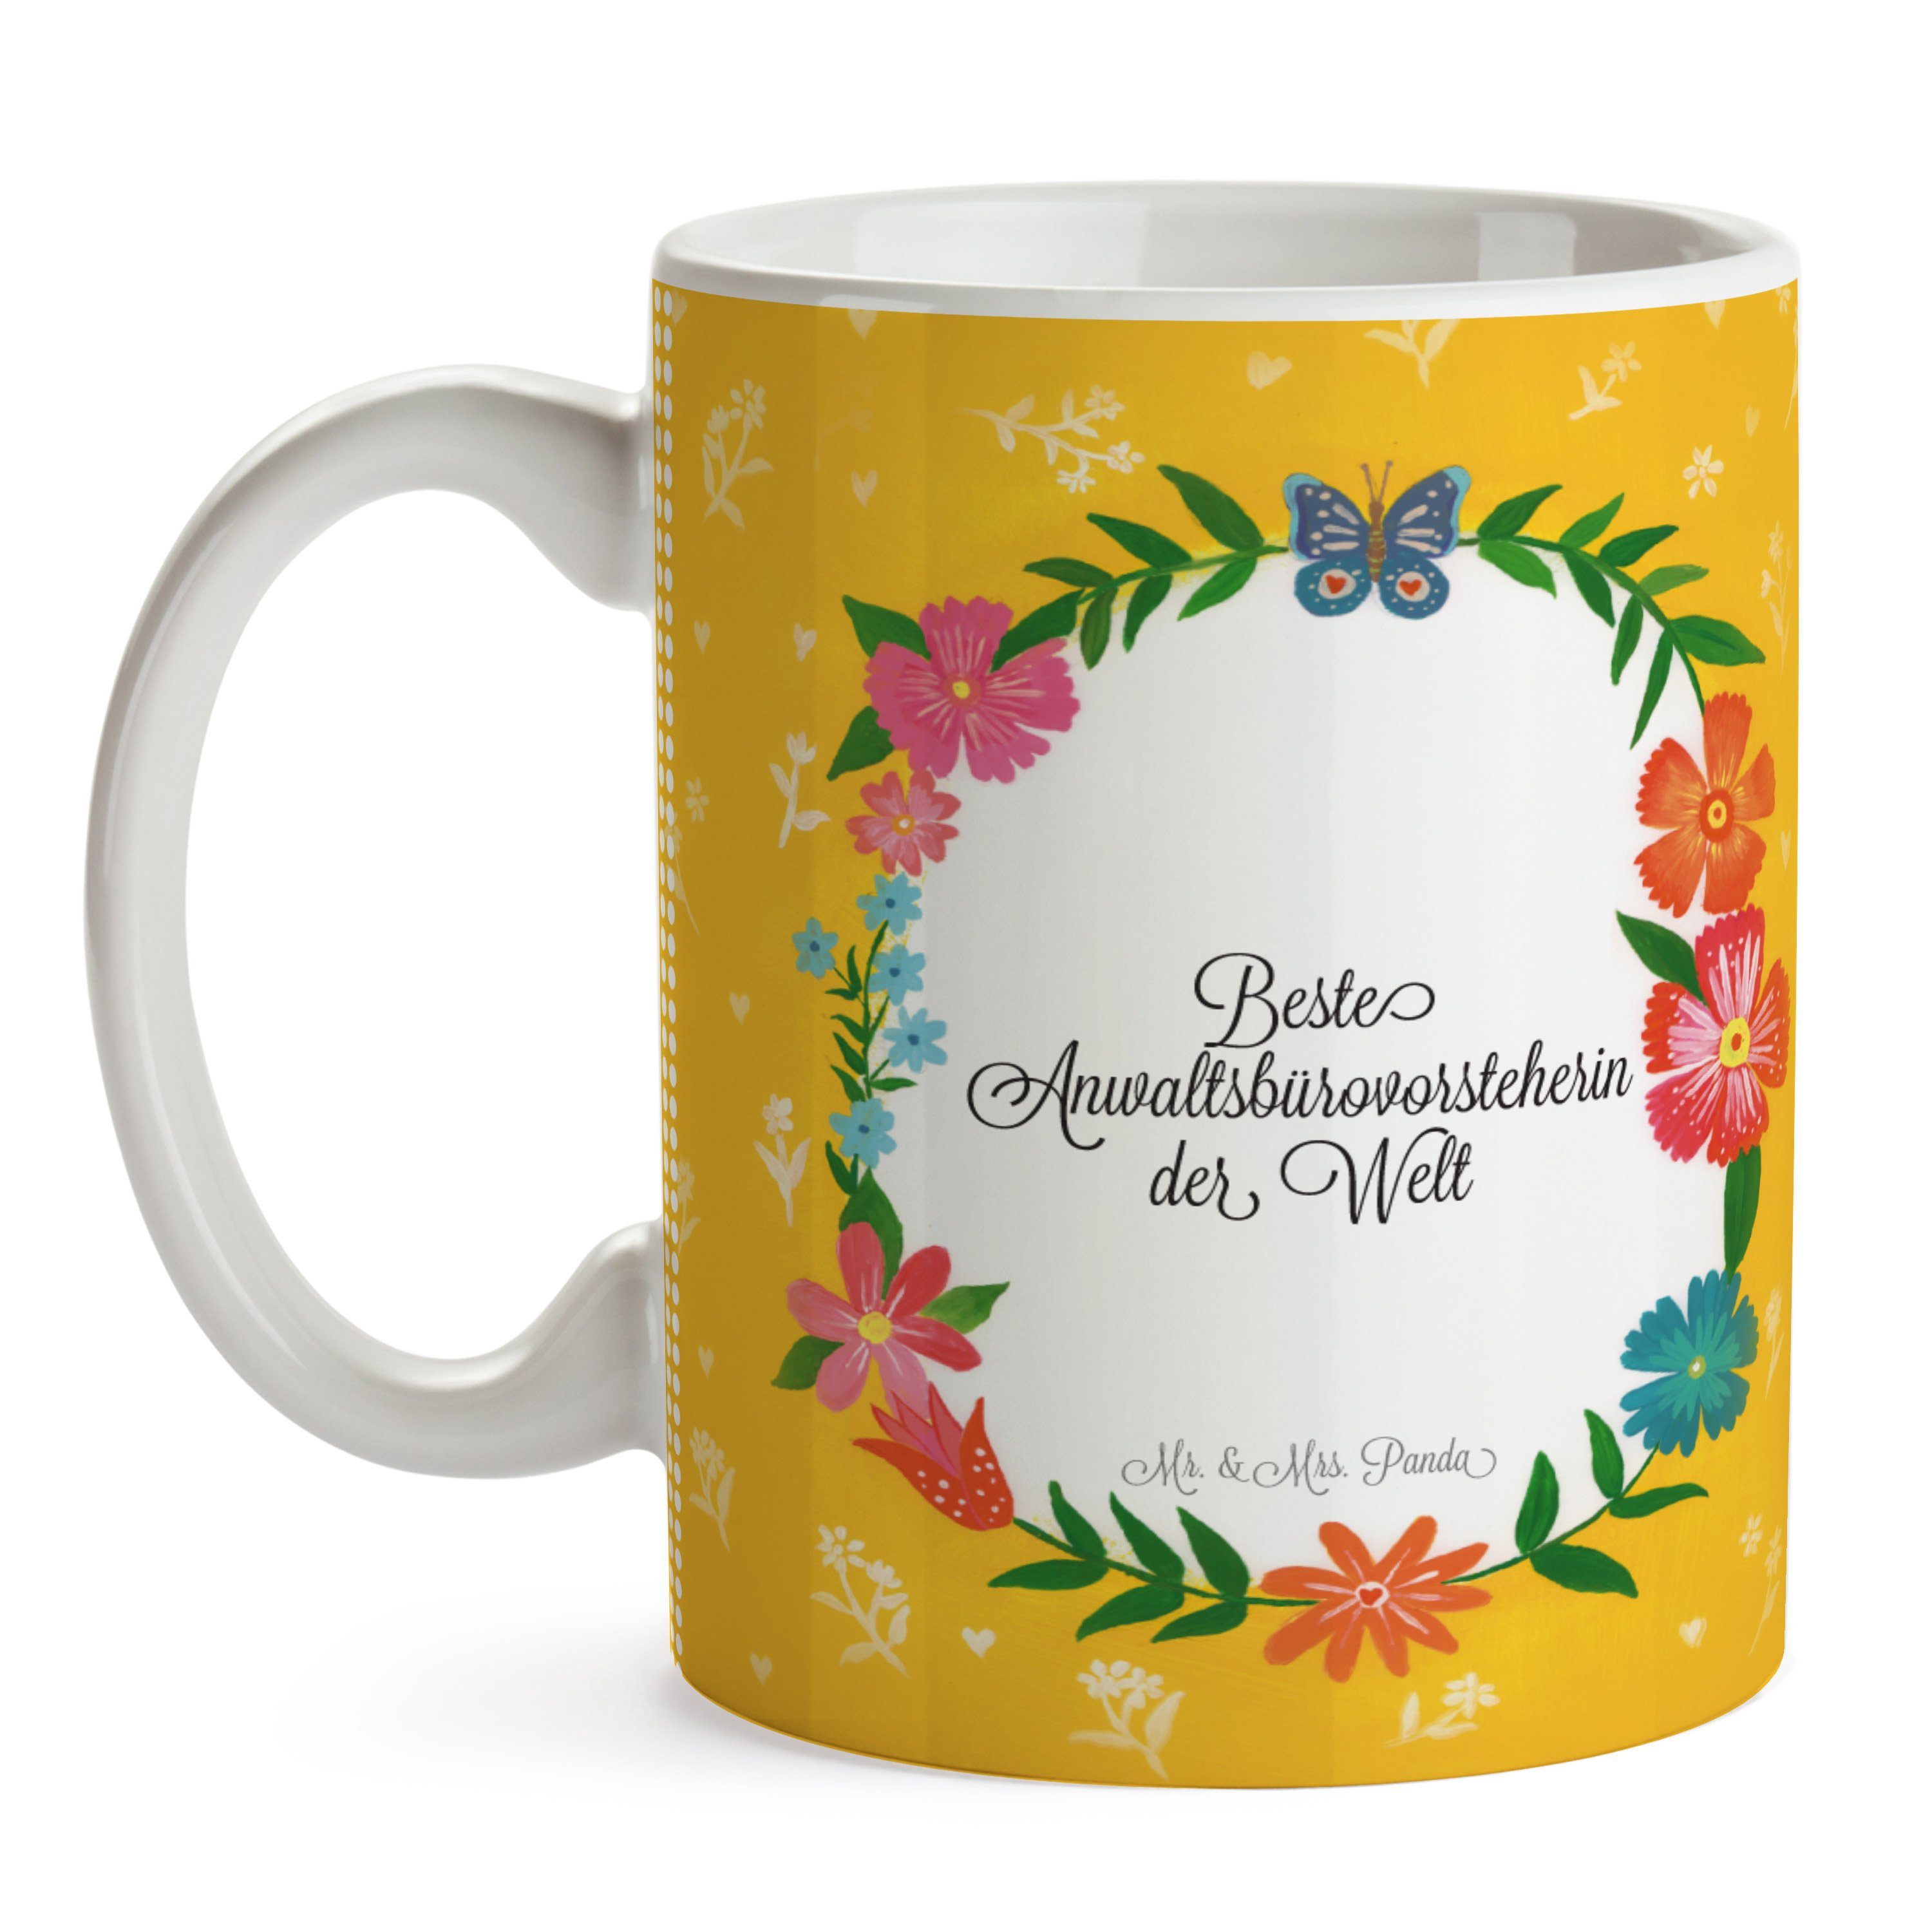 Geschenk, Mrs. - Schenken, Anwaltsbürovorsteherin Tasse Keramik Abschluss, Mr. & Kaffeetasse, Panda